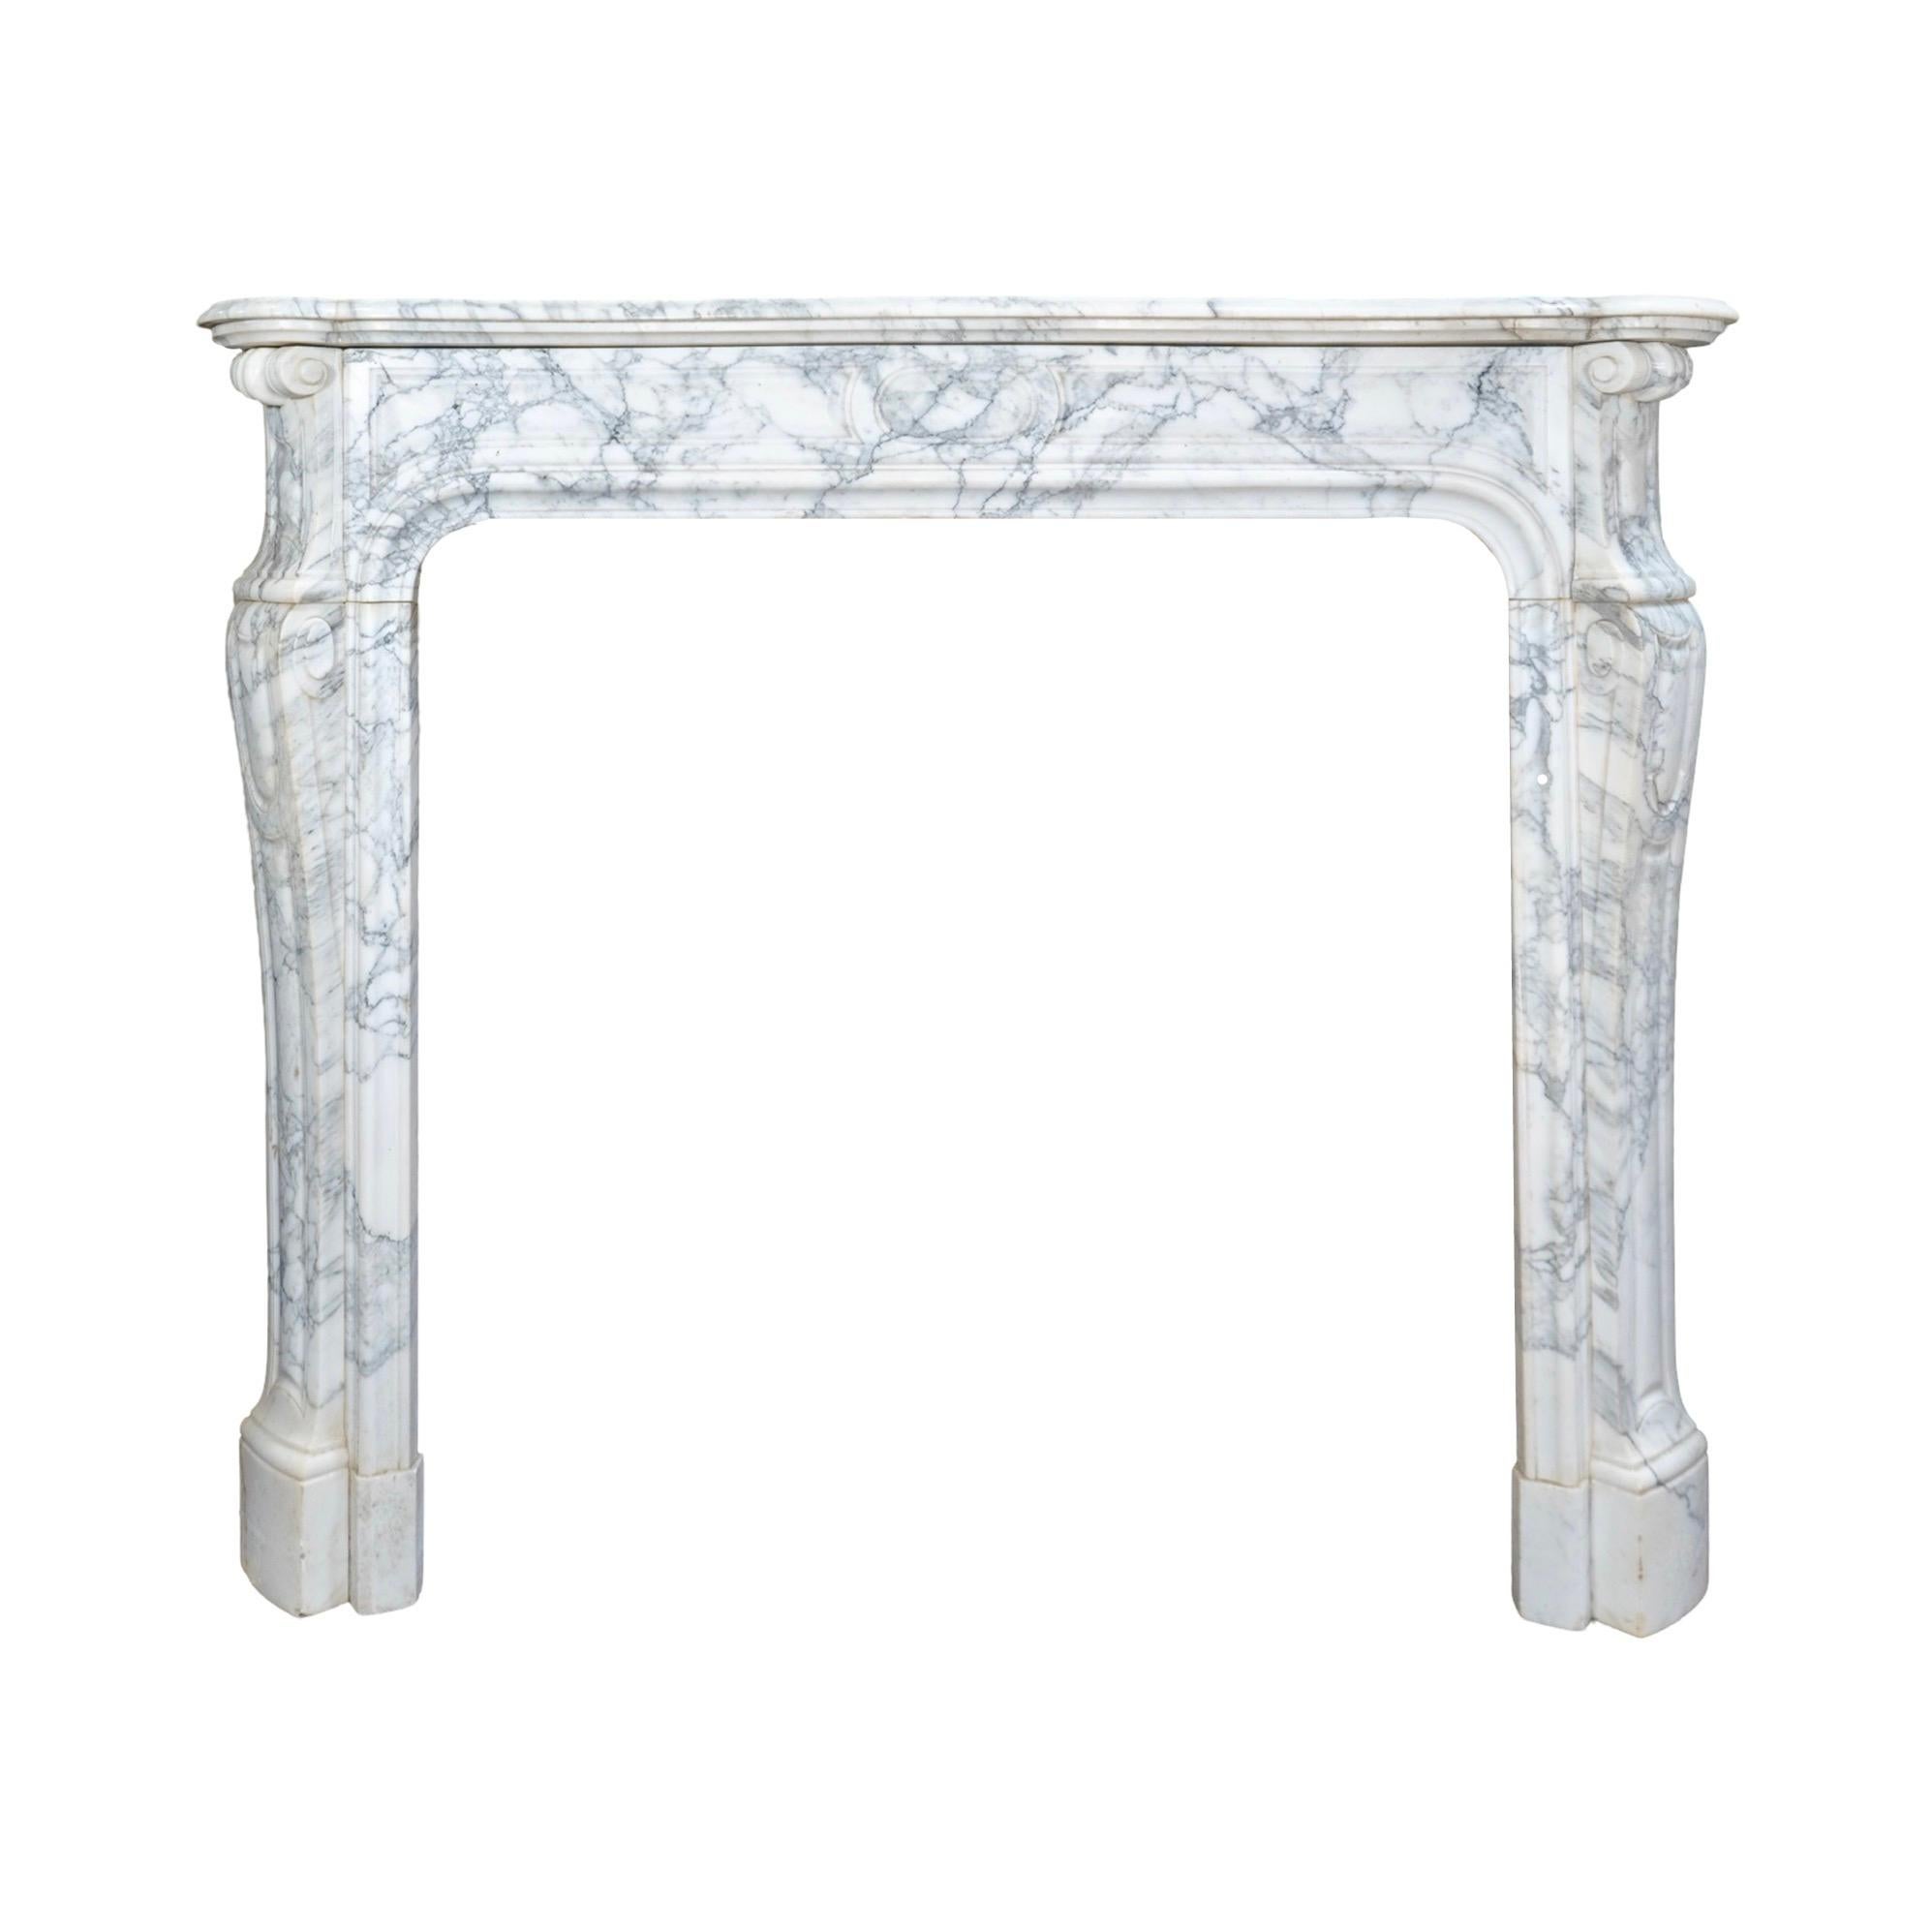 Dieser Kaminsims im Louis-XVI-Stil aus den 1890er Jahren ist aus exquisitem weiß geädertem Carrara-Marmor gefertigt und verfügt über aufwändig geschnitzte Details, die ihm einen Hauch von Eleganz verleihen. Verleihen Sie Ihrem Kamin einen Hauch von